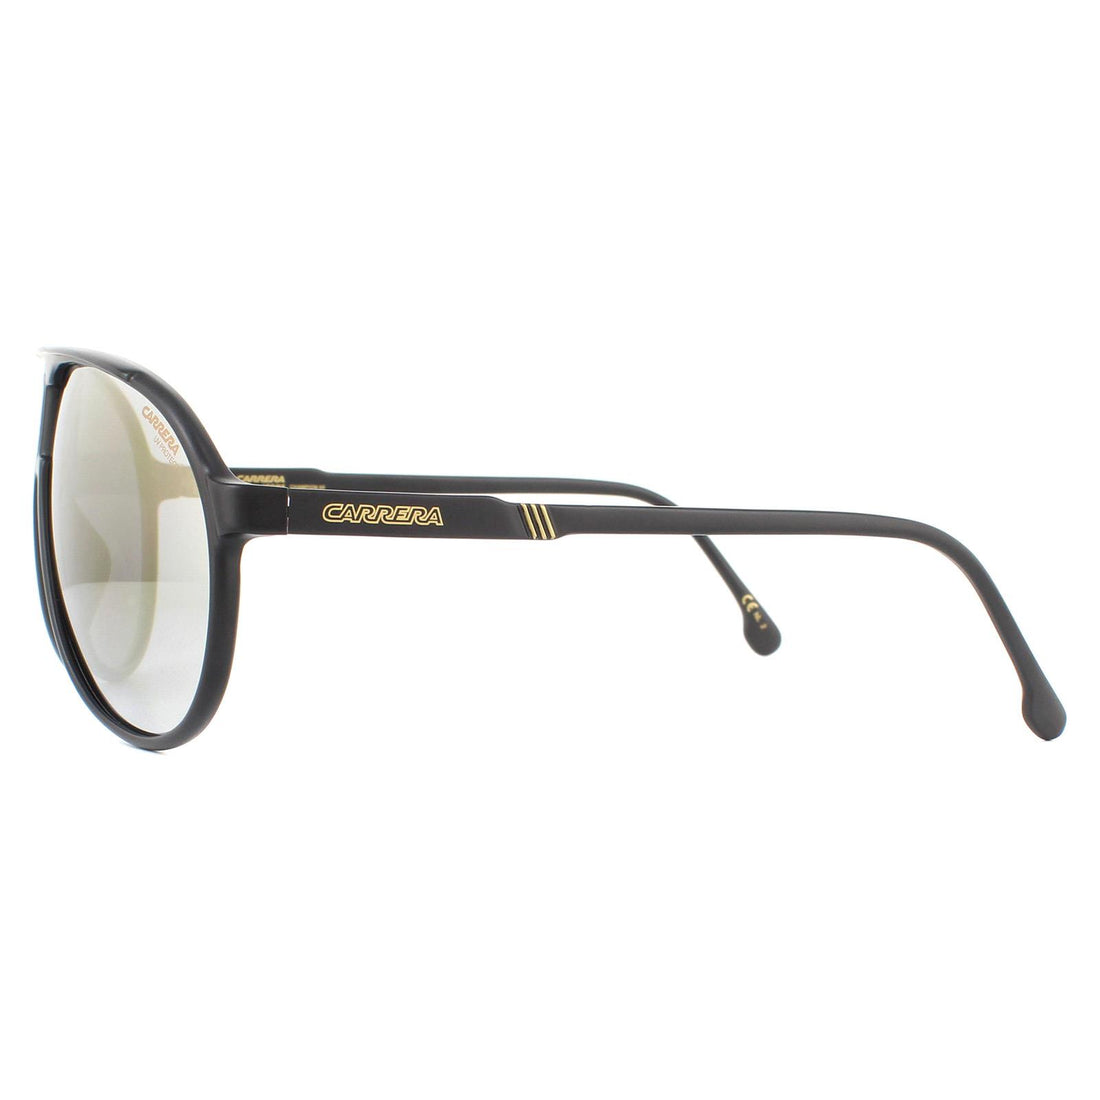 Carrera Sunglasses Champion 65 003/JO Matte Black Grey Bronze Mirrored